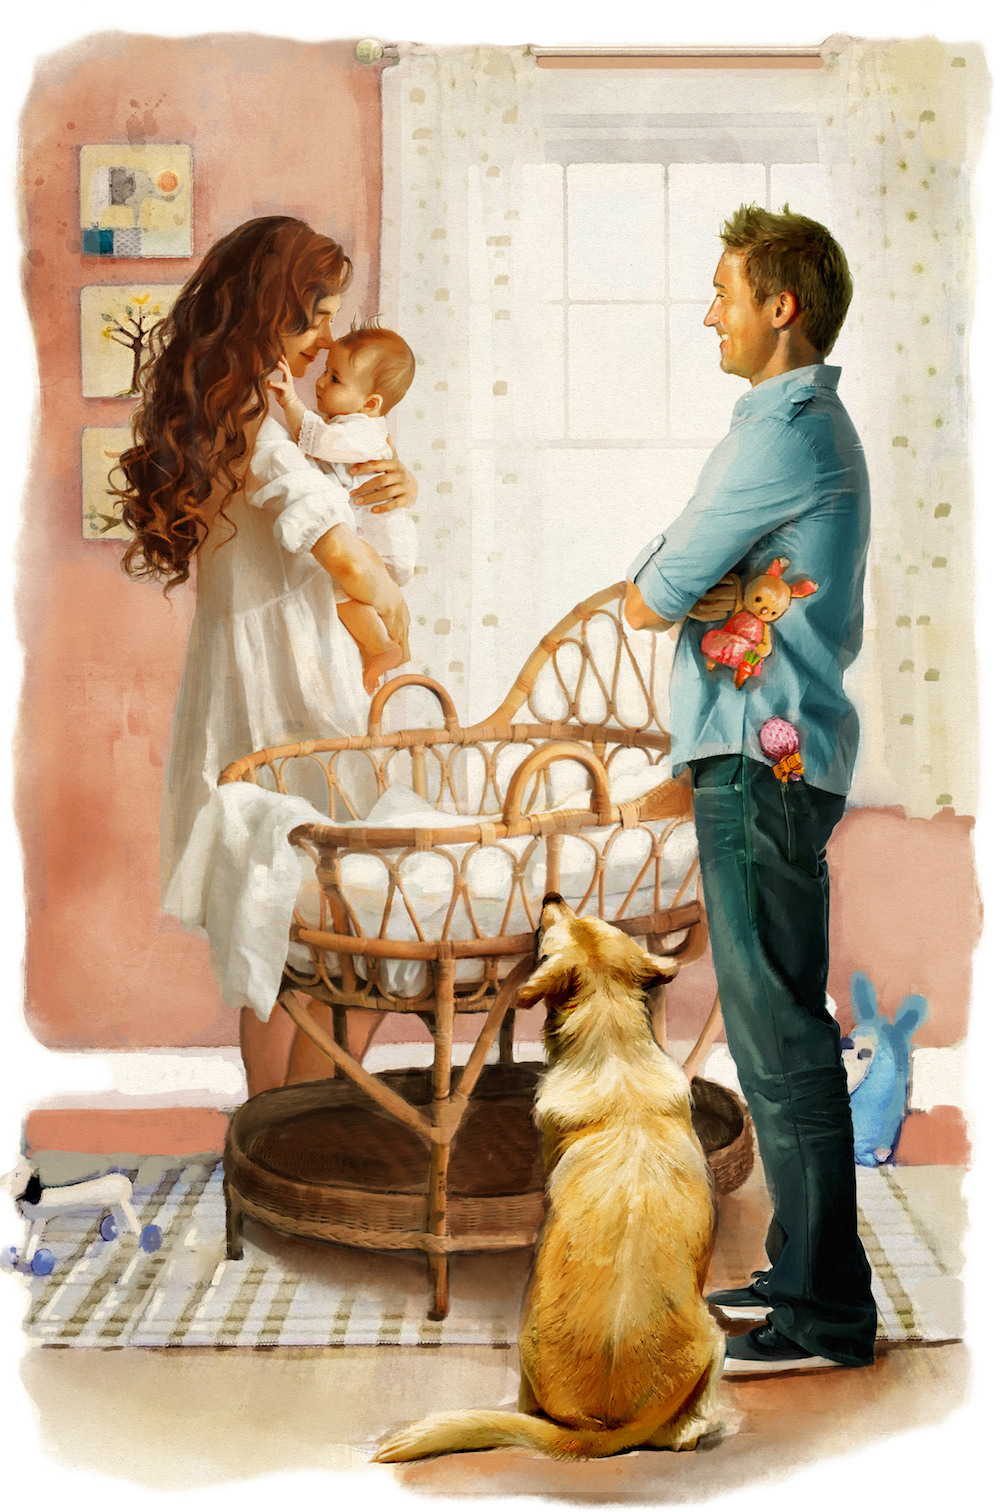 Kết hôn, mua căn nhà đầu tiên, và sinh con là những sự kiện trong đời, mà theo truyền thống, tượng trưng cho một bước chuyển đổi quan trọng sang thế giới của người trưởng thành. (Ảnh: Biba Kayewich)